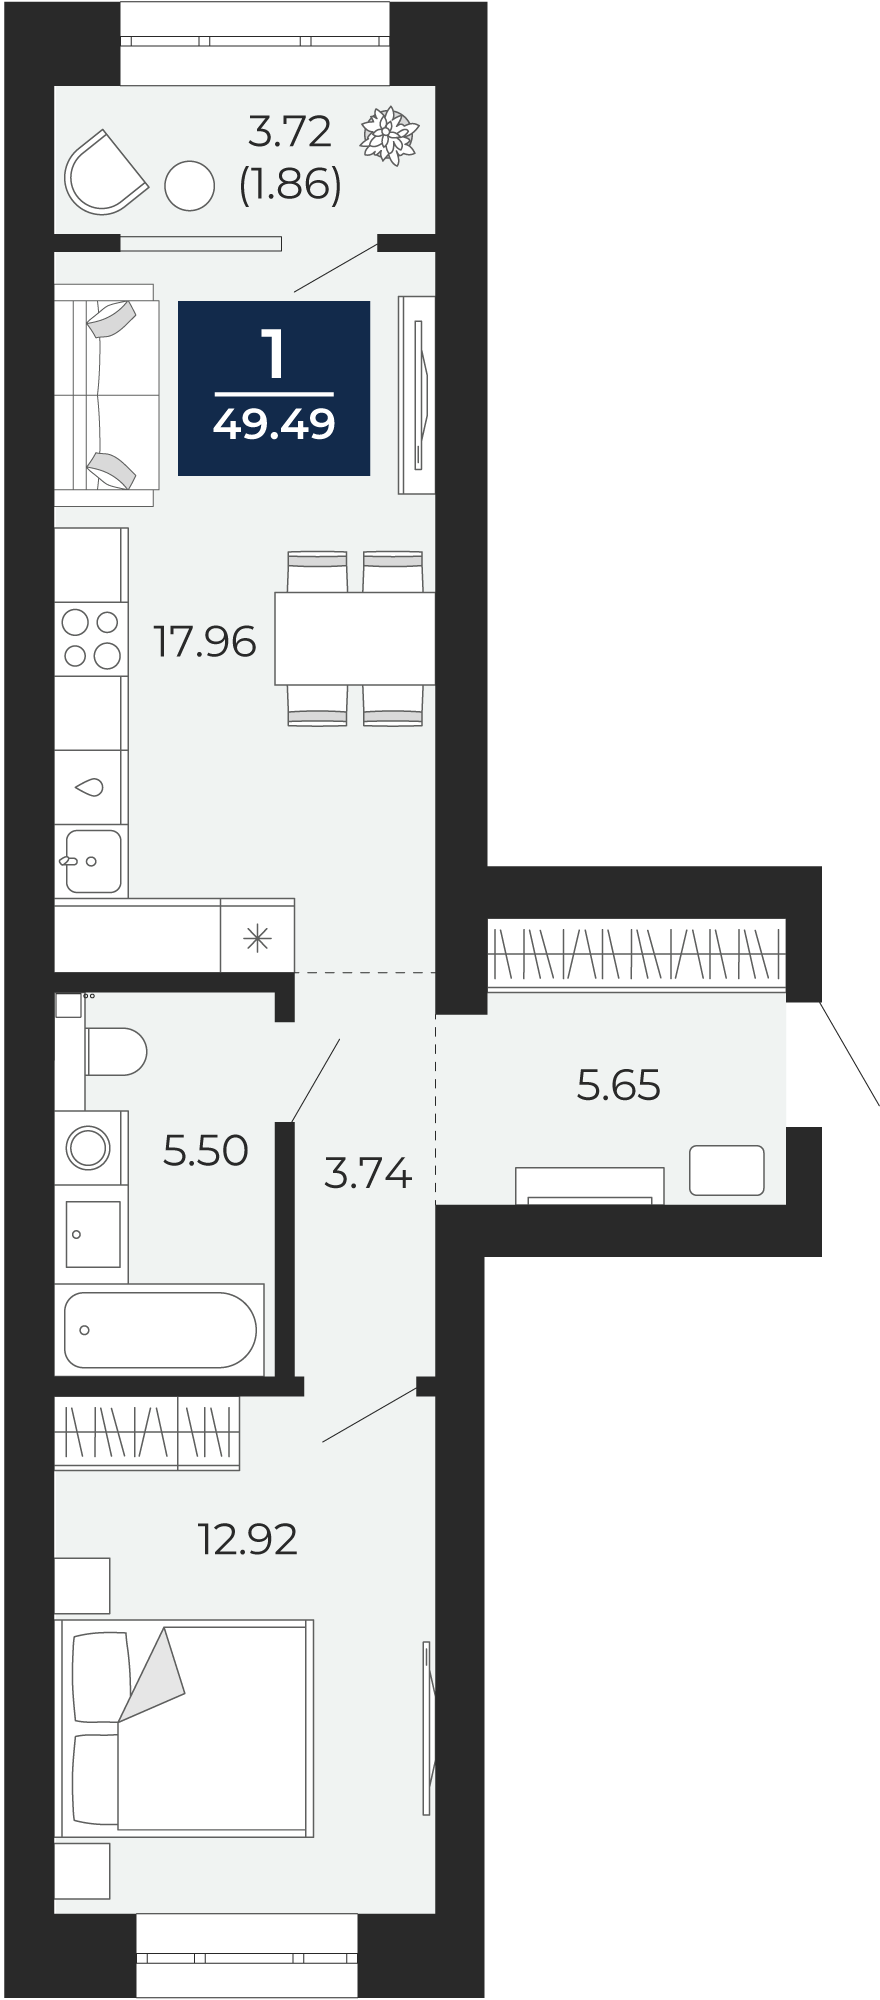 Квартира № 23, 1-комнатная, 49.49 кв. м, 5 этаж